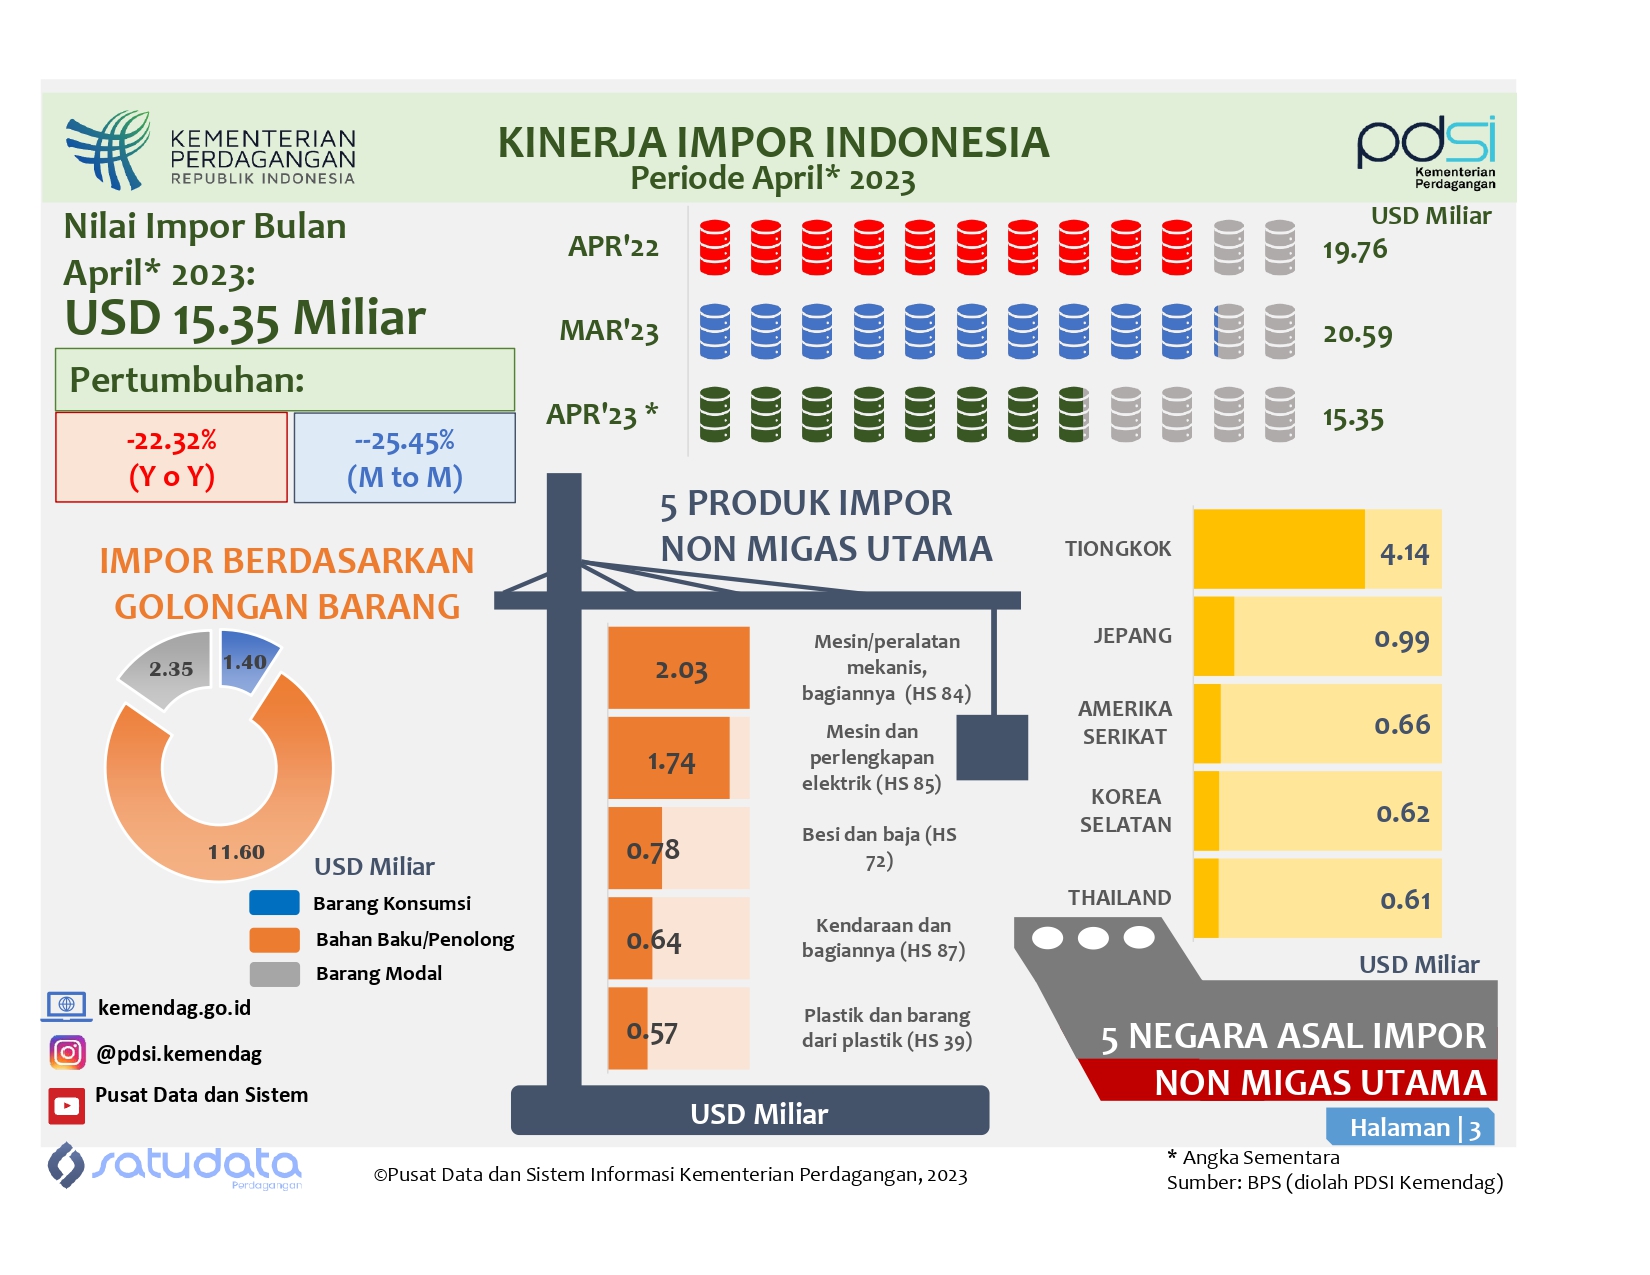 Kinerja Impor Indonesia April 2023